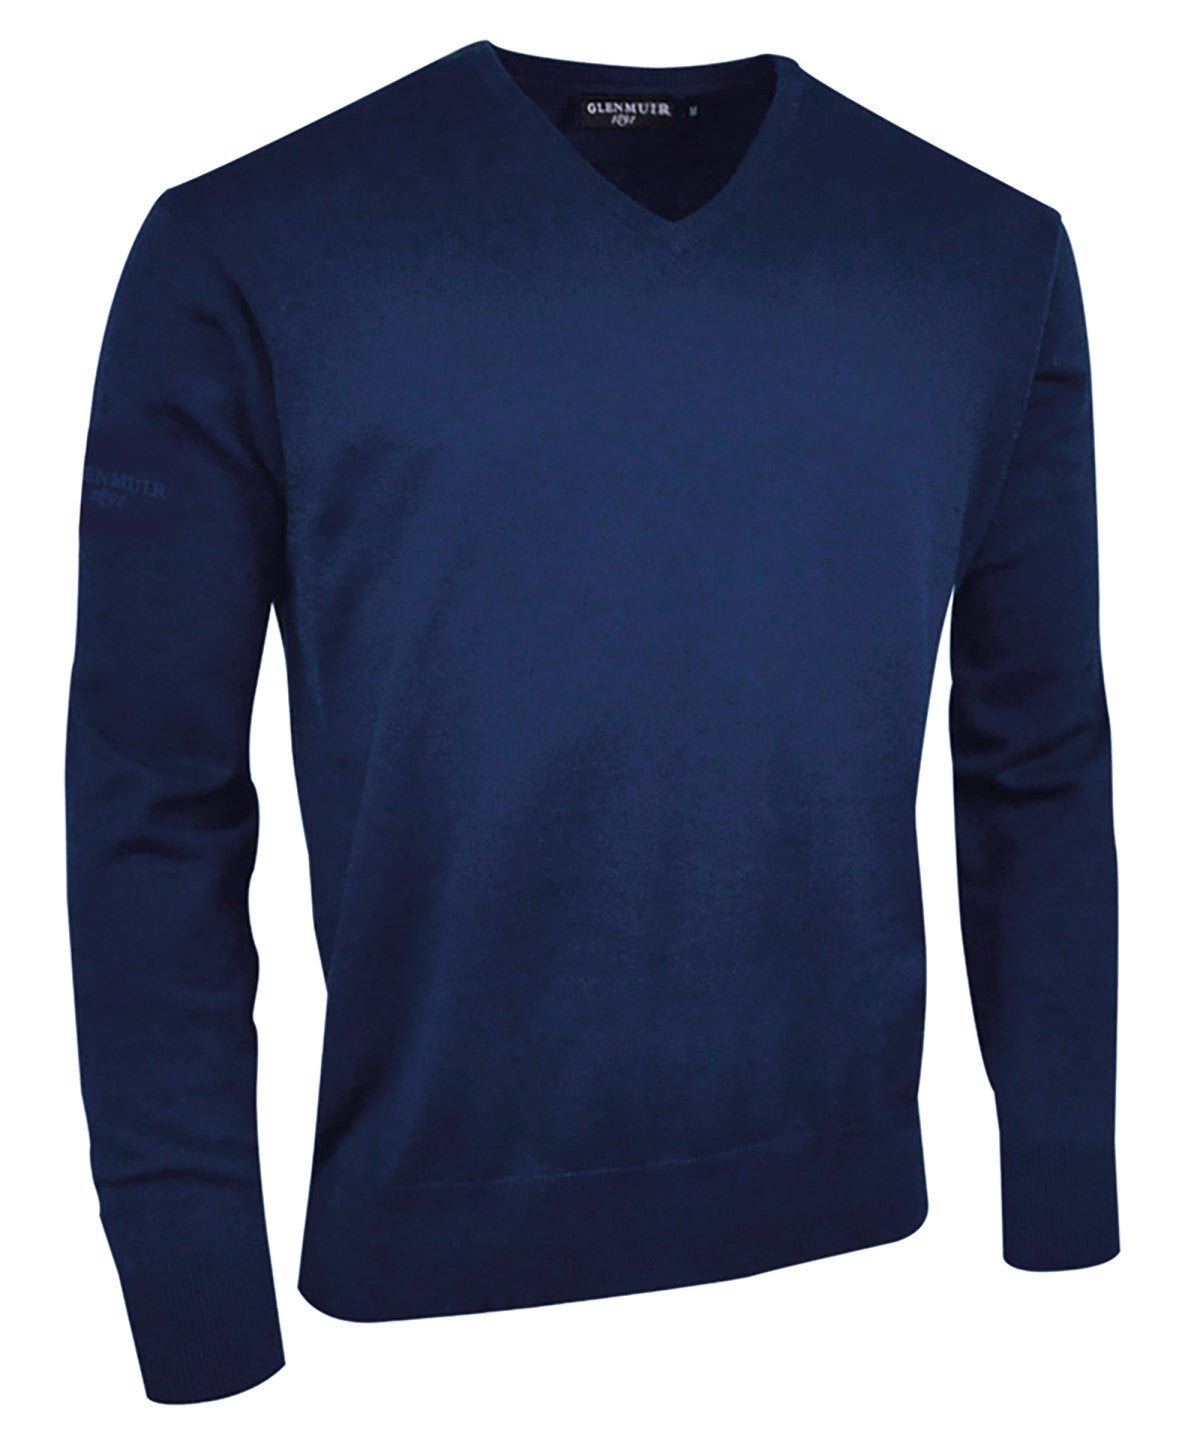 Glenmuir Eden Cotton N-neck Sweater